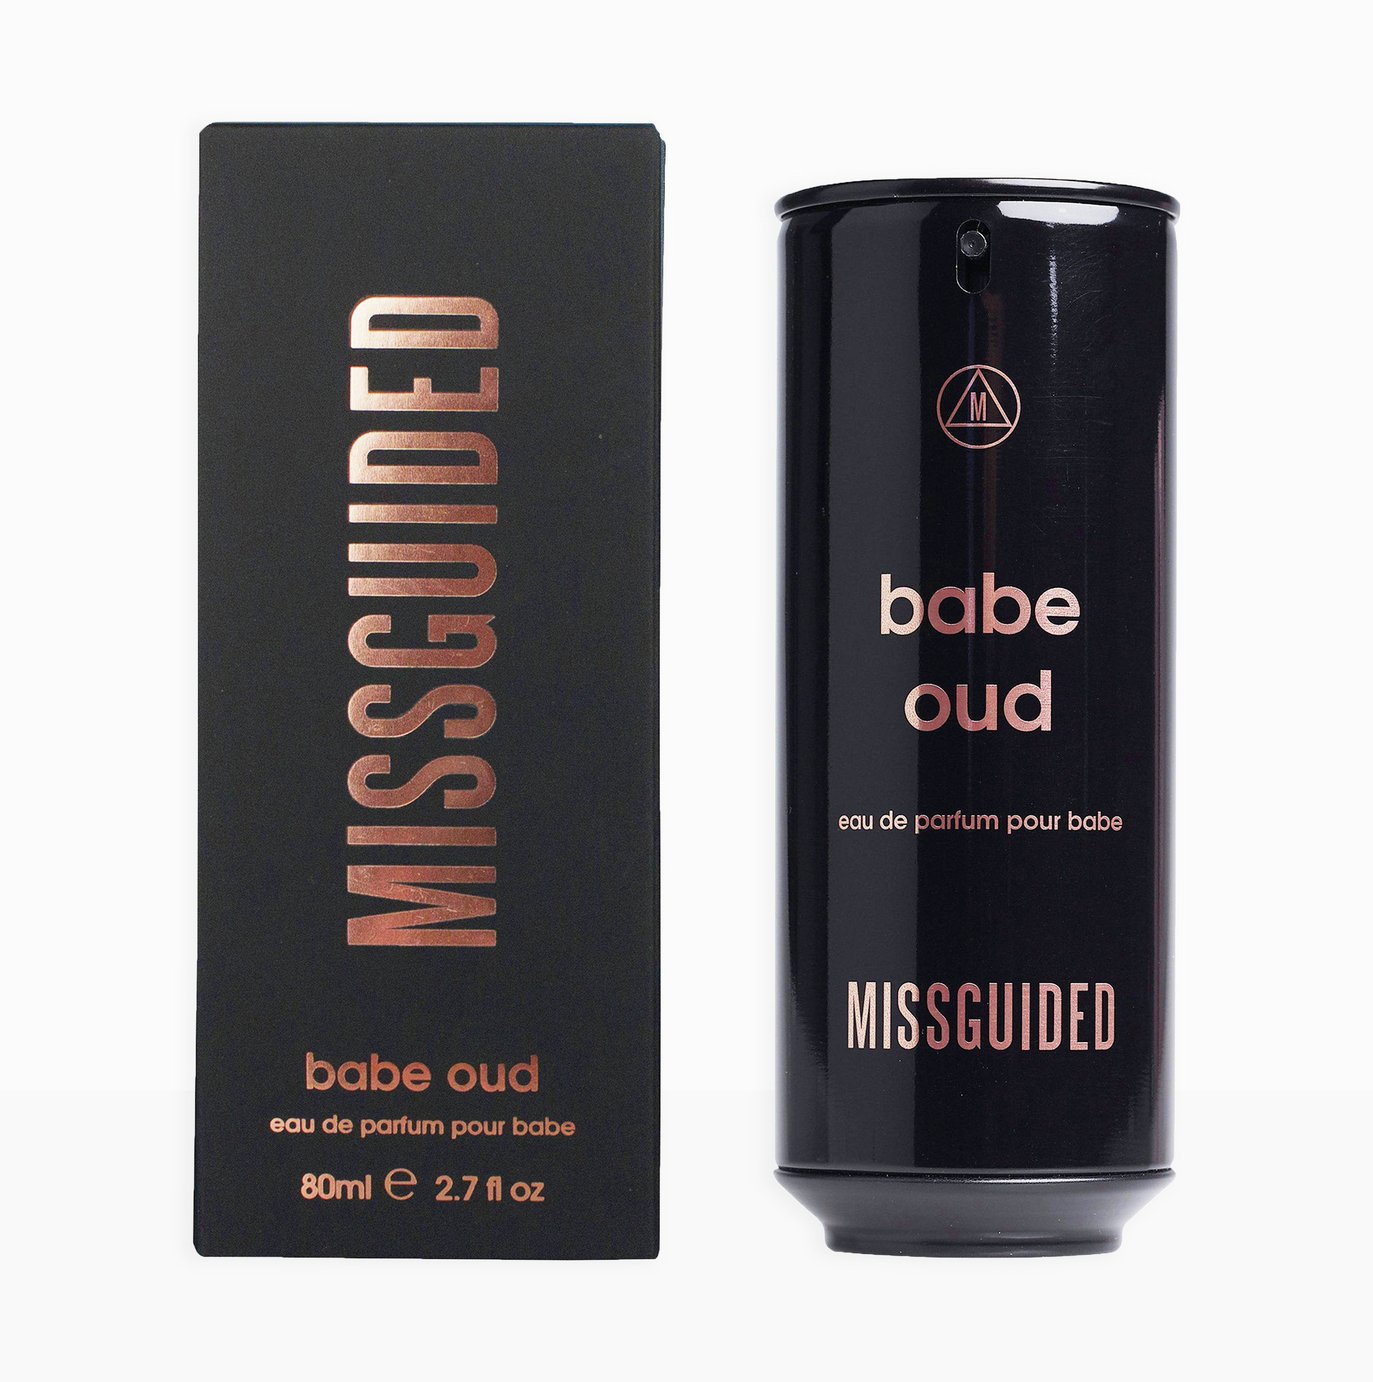 Missguided Babe Oud Eau de Parfum for Women - 80ml